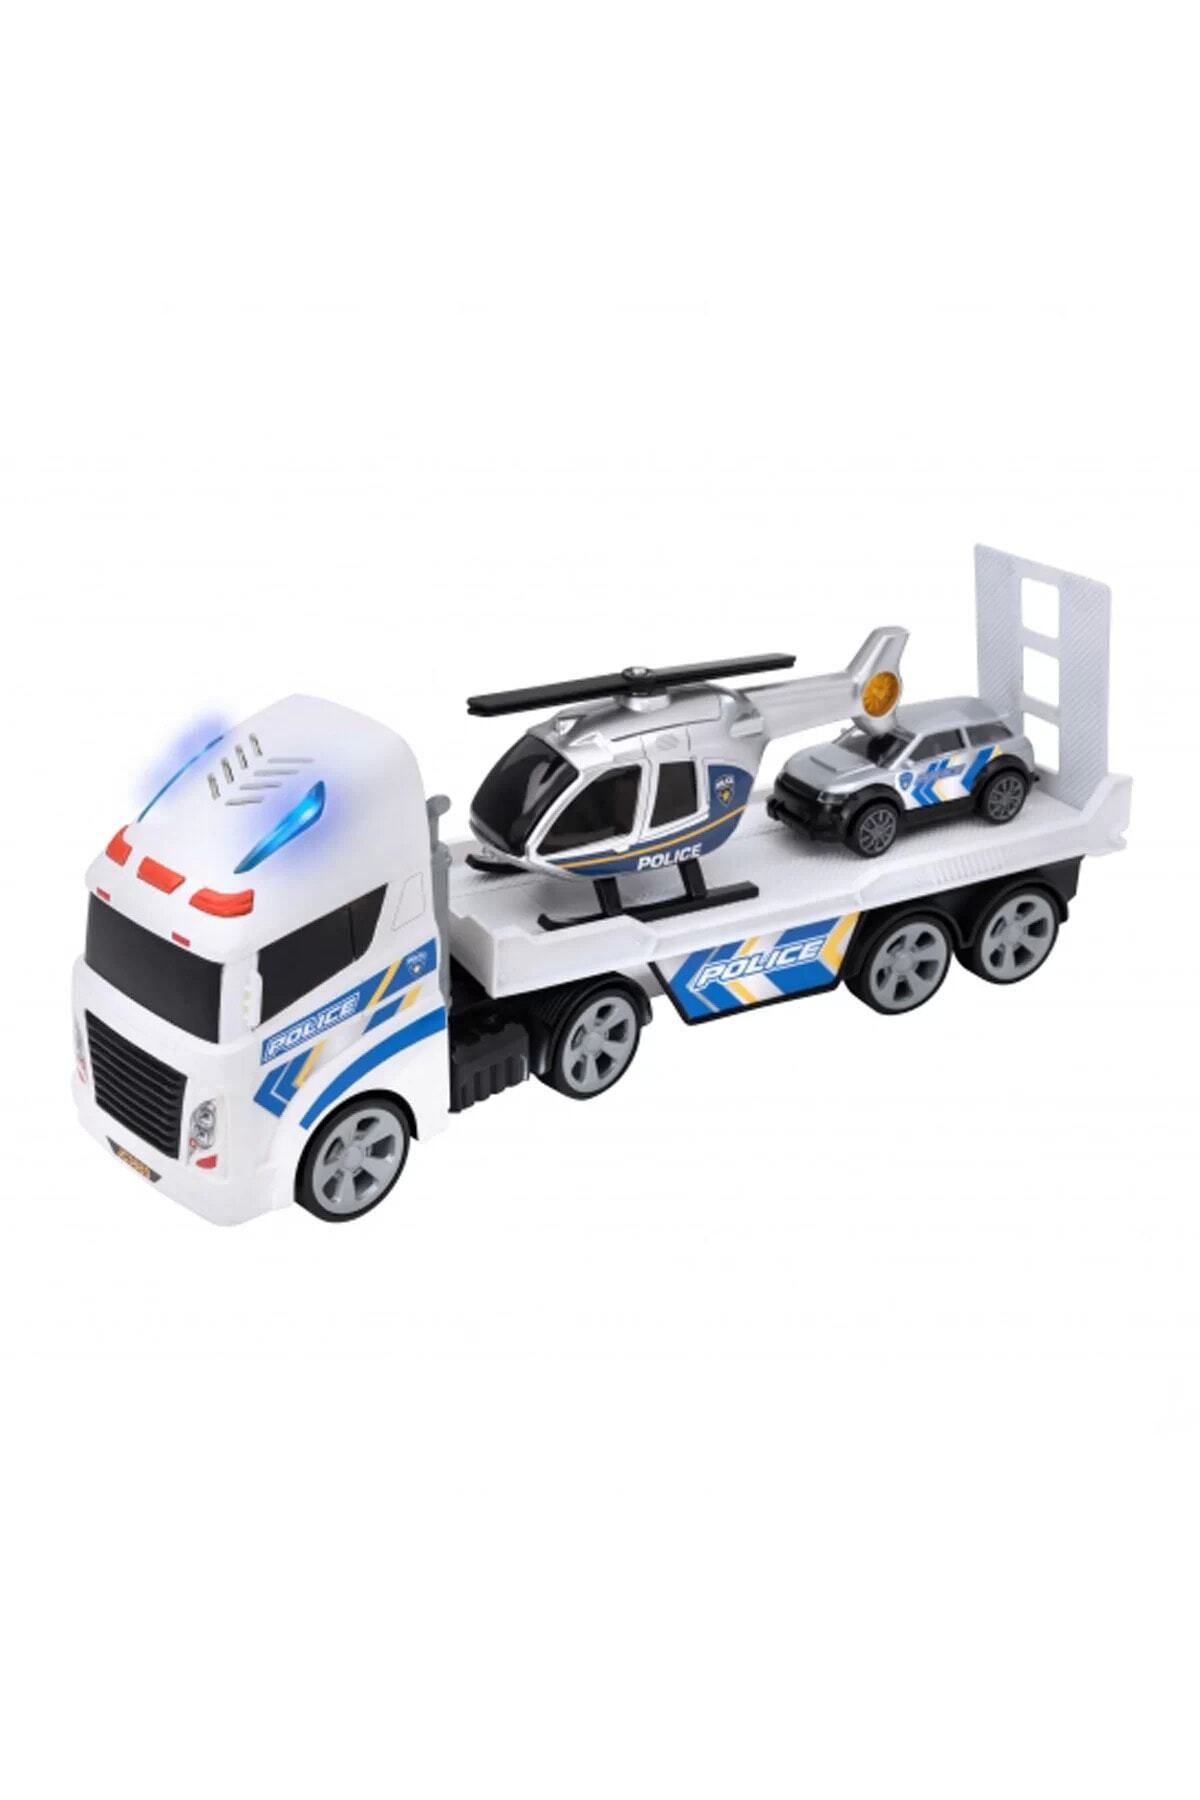 Erdem Oyuncak Çocuk Polis Transporter Taşıyıcı Tır Araçlar Oyun Seti